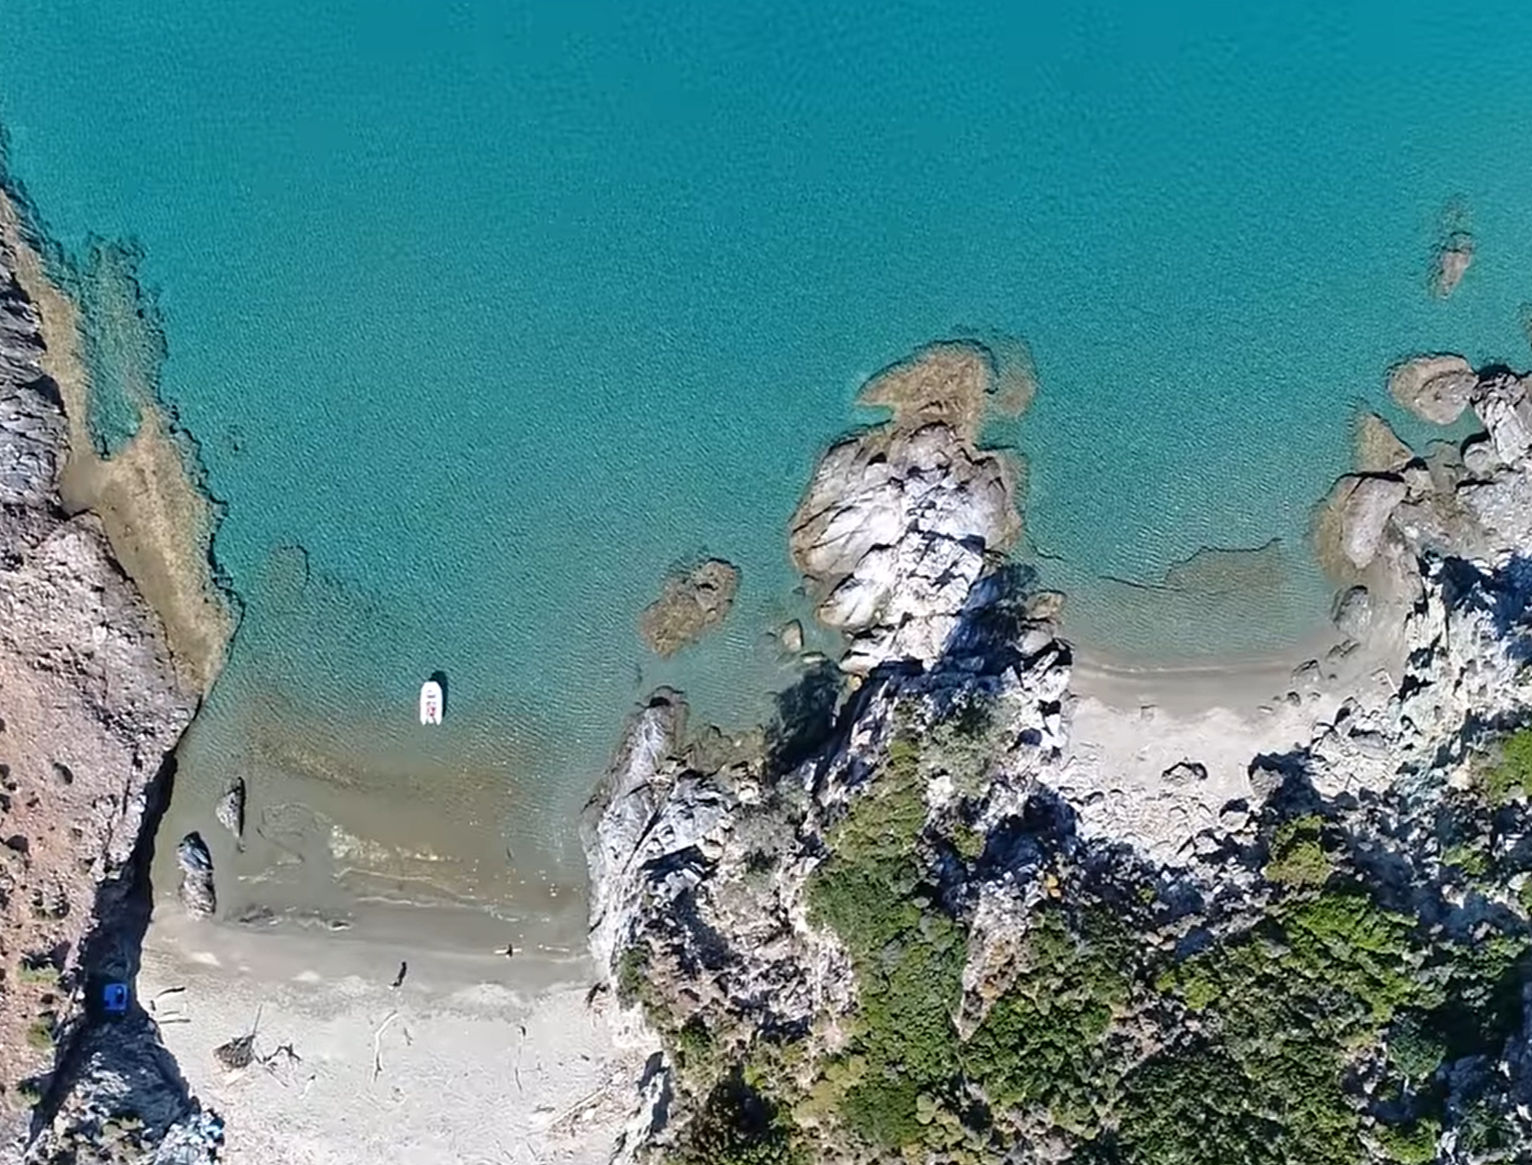 Εύβοια: Η παραλία με τα κρυστάλλινα νερά που σε «μετατρέπει» σε ναυαγό (video)